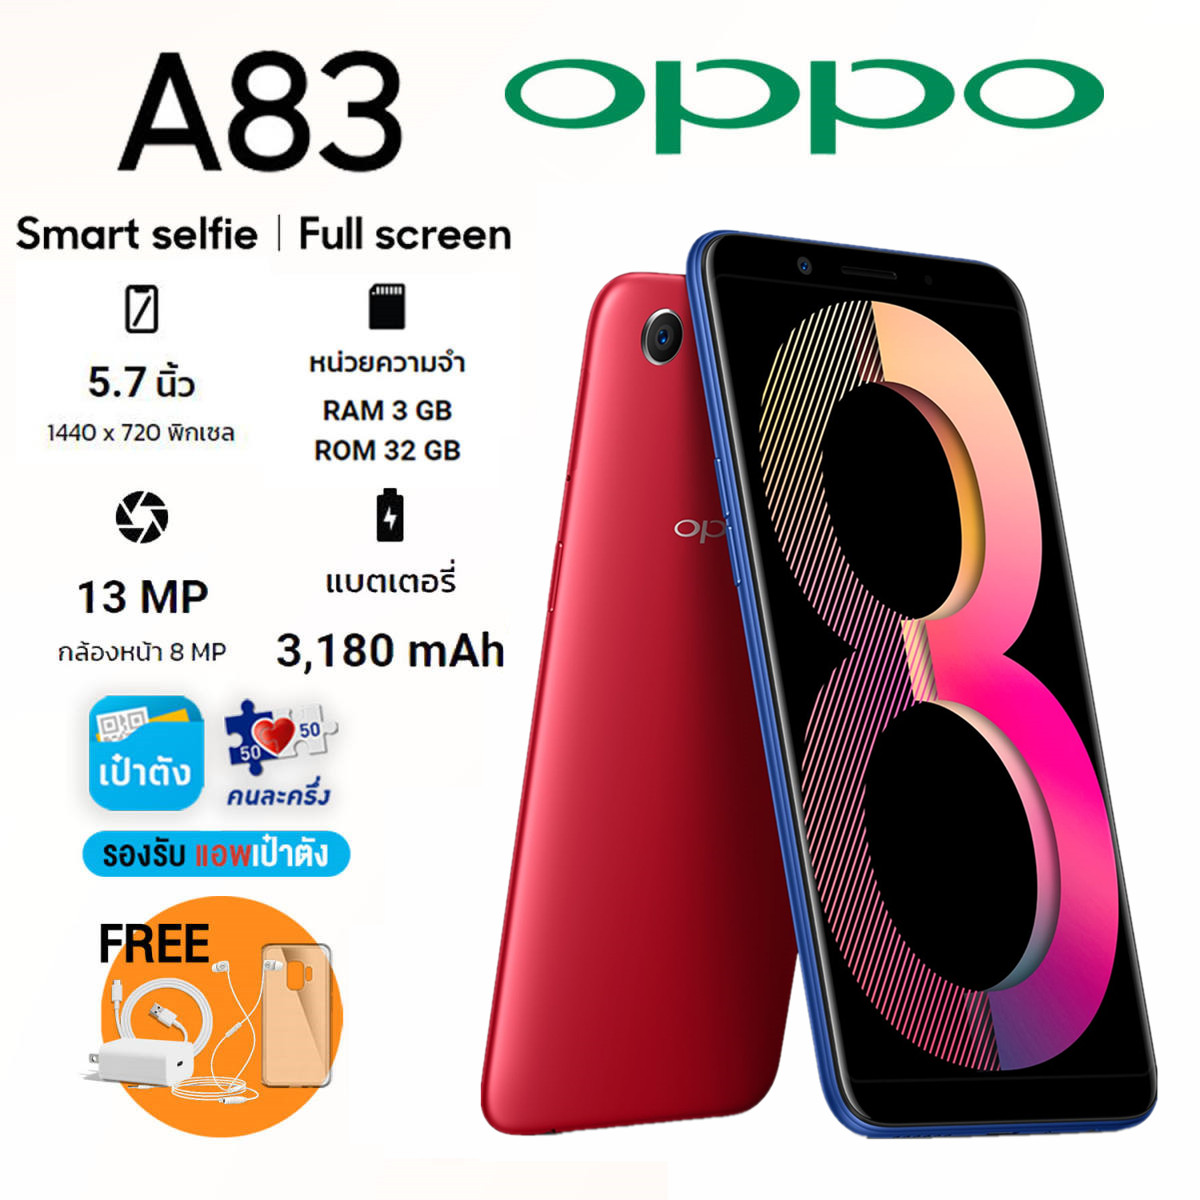 ?ลดล้างสต็อก? Oppo A83 แท้?% เครื่องใหม่ในซีล อุปกรณ์ครบกล่อง (ประกัน 3 เดือน) ฟรี!!